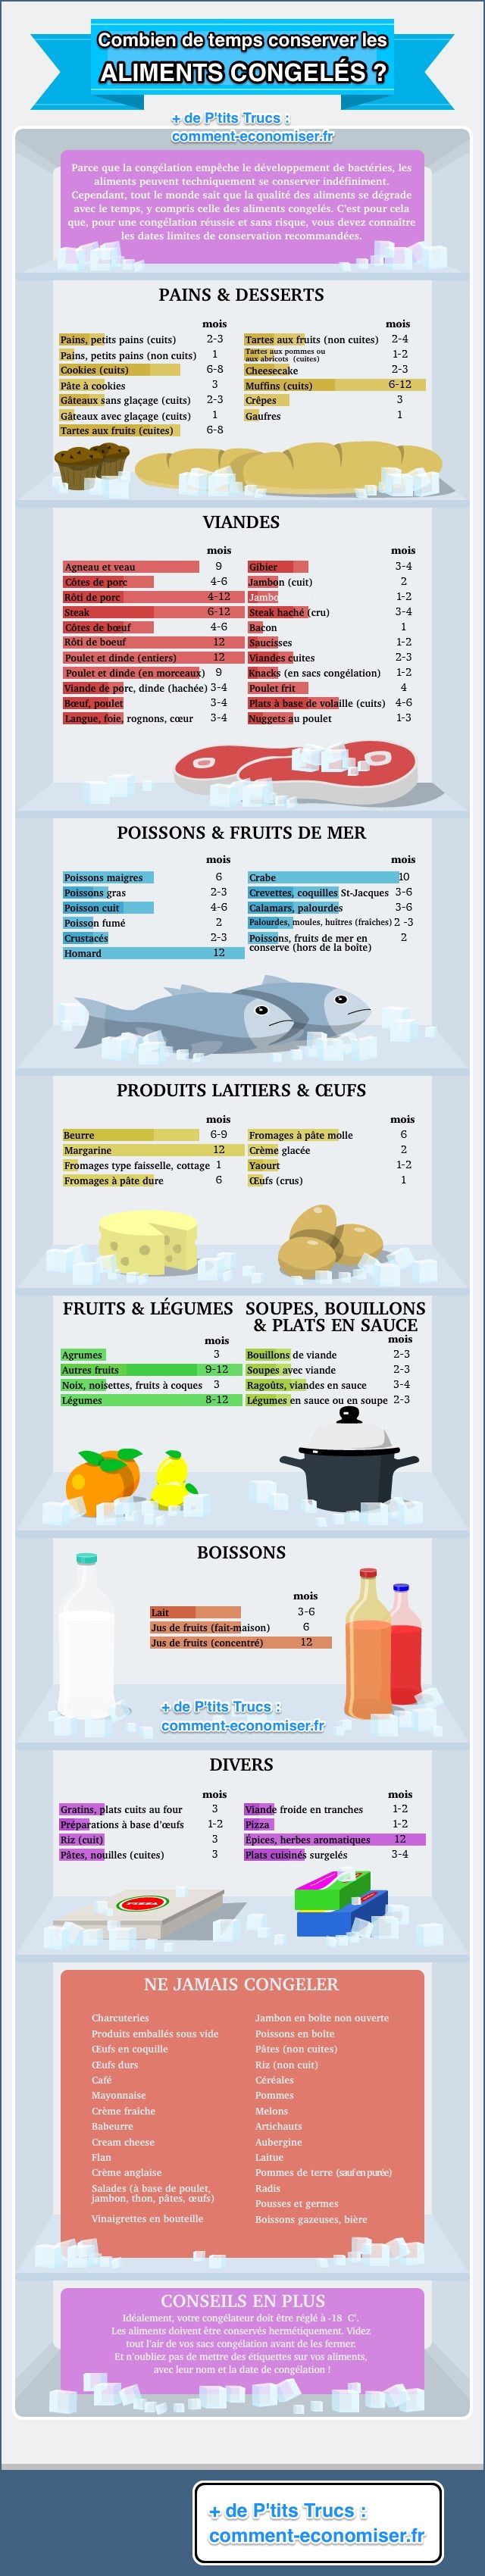 La infografía sobre cuánto tiempo puede mantener la comida en el congelador.